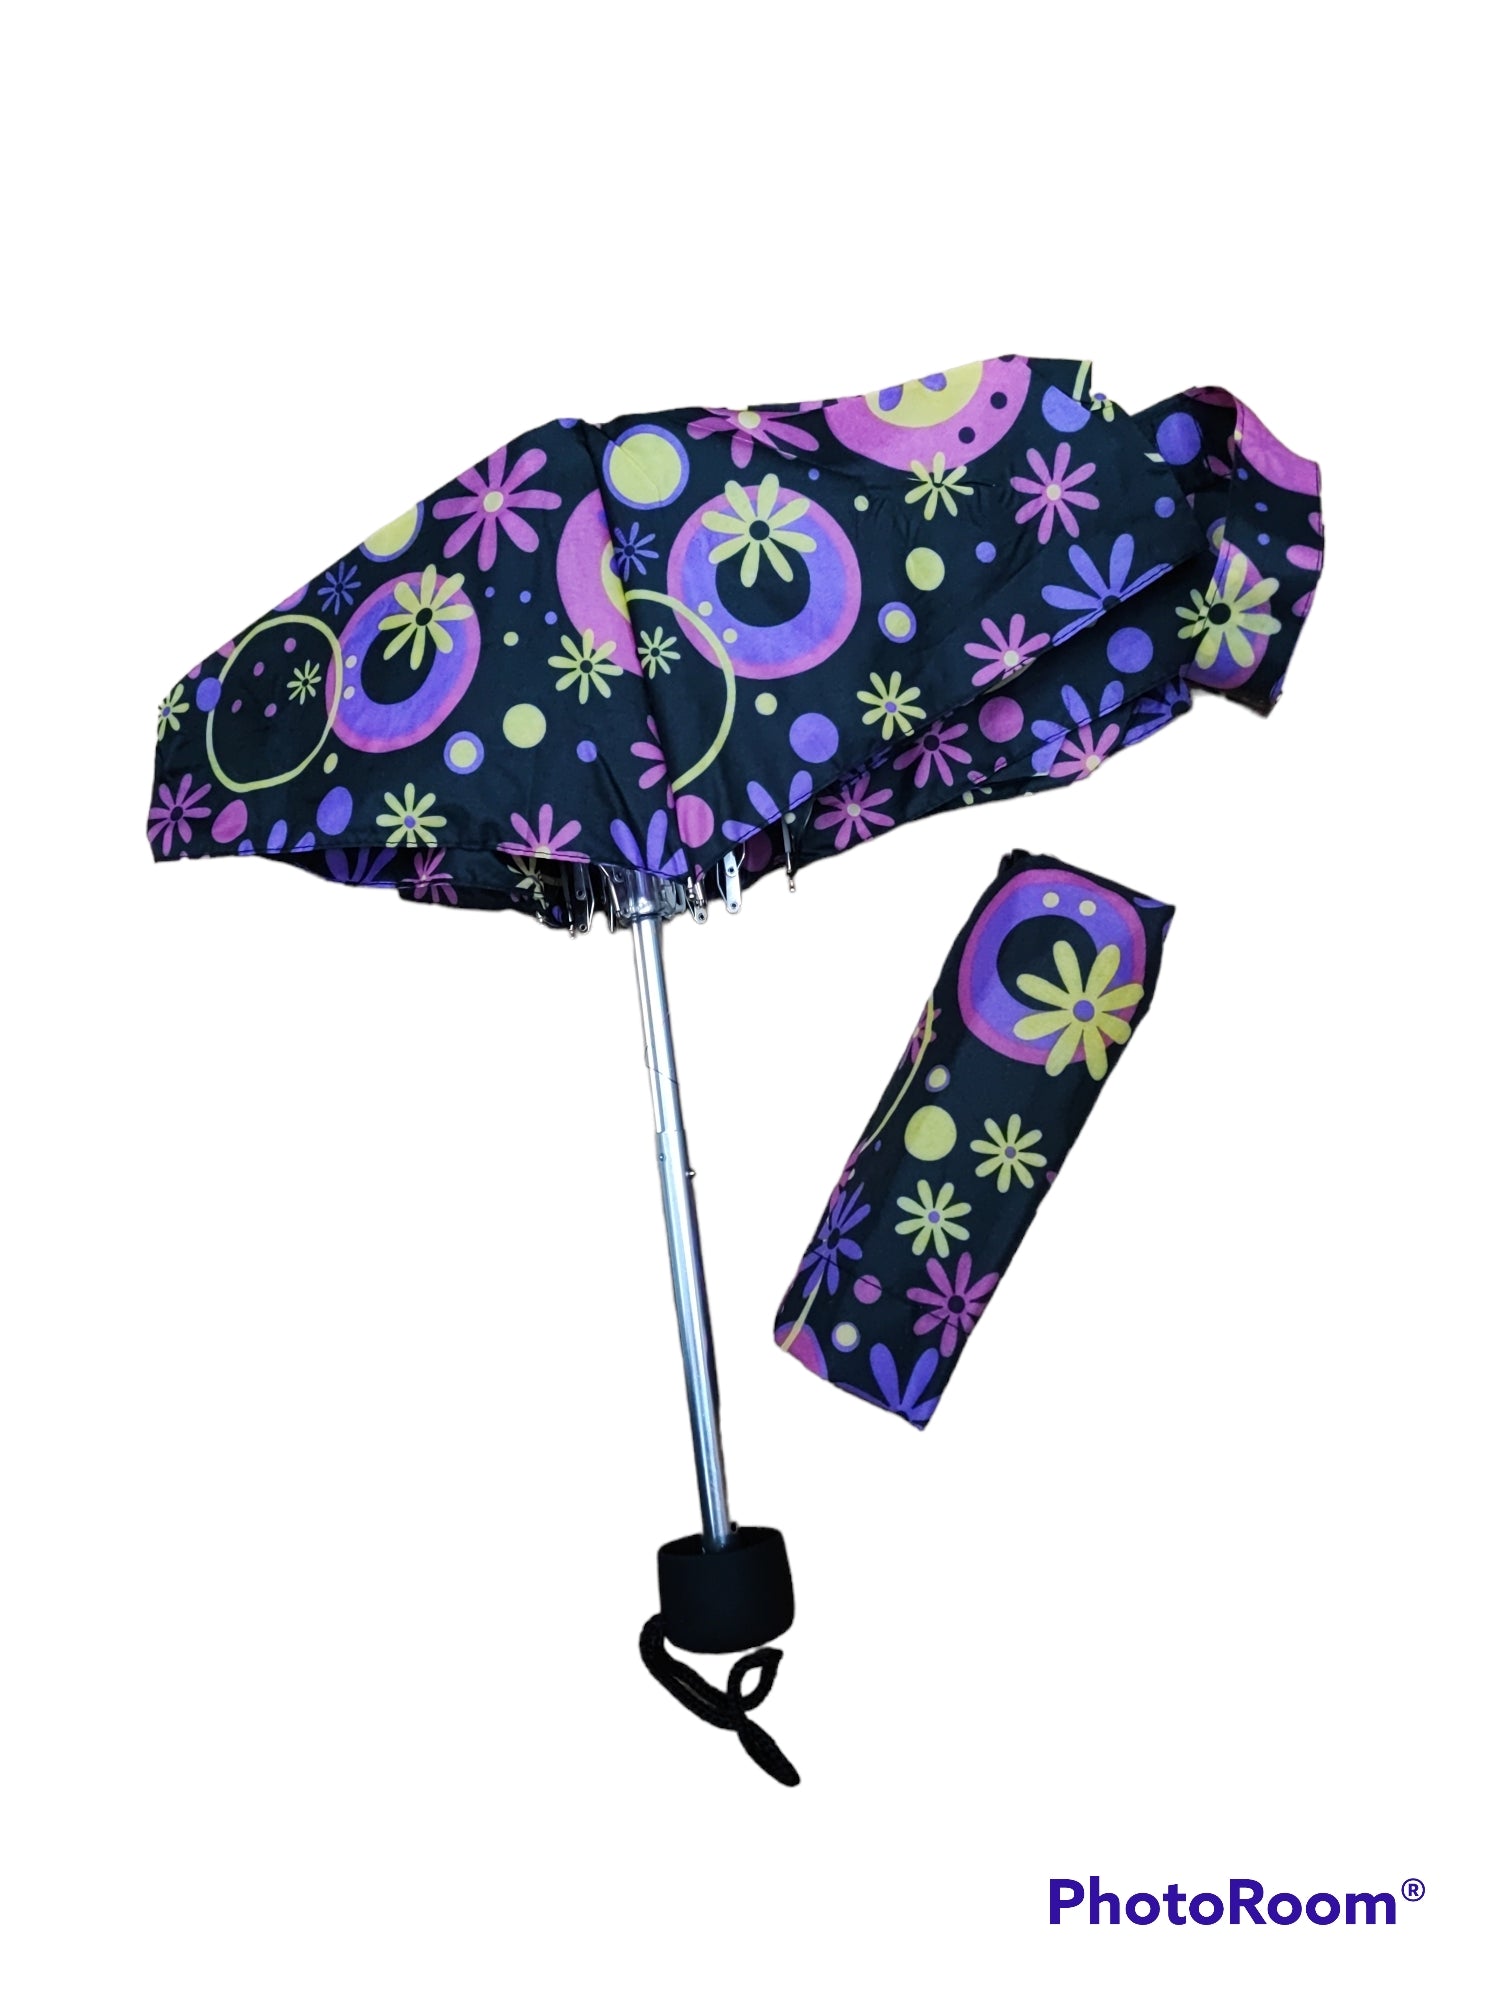 Parapluie motif fleurs   (x12) #5F-21